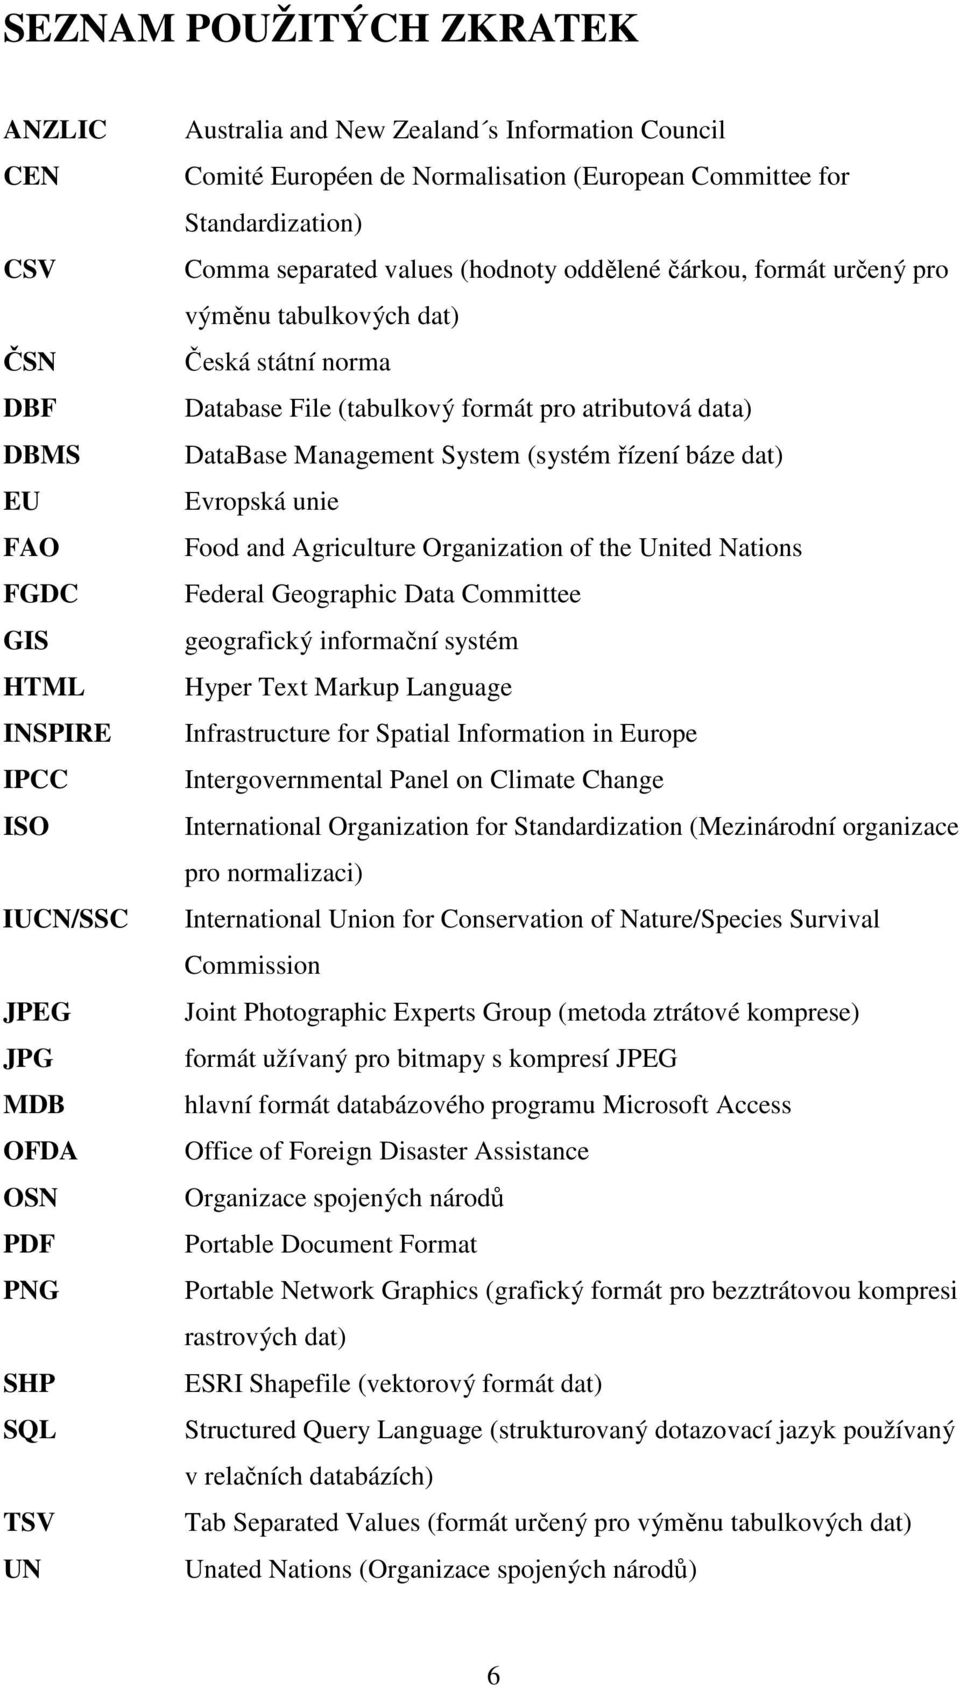 (tabulkový formát pro atributová data) DataBase Management System (systém řízení báze dat) Evropská unie Food and Agriculture Organization of the United Nations Federal Geographic Data Committee